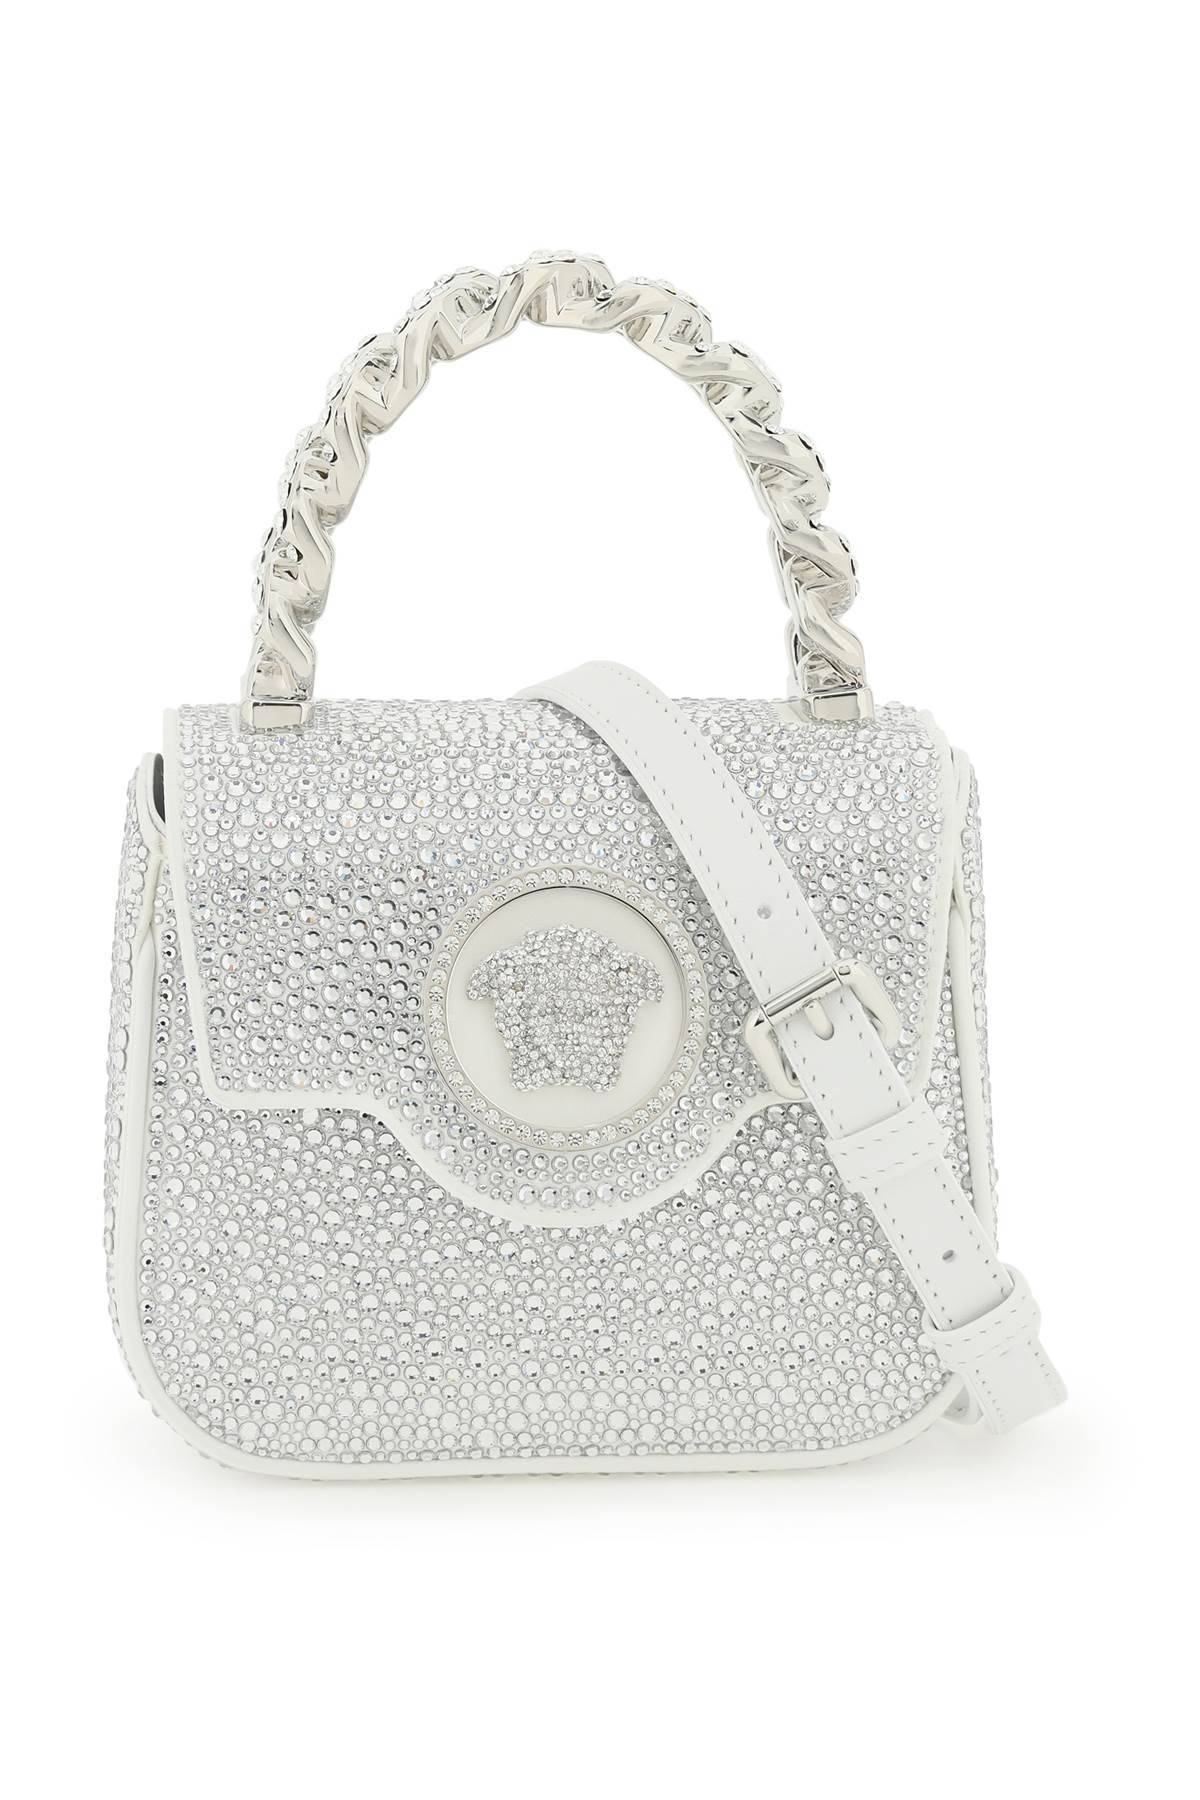 Versace VERSACE la medusa handbag with crystals